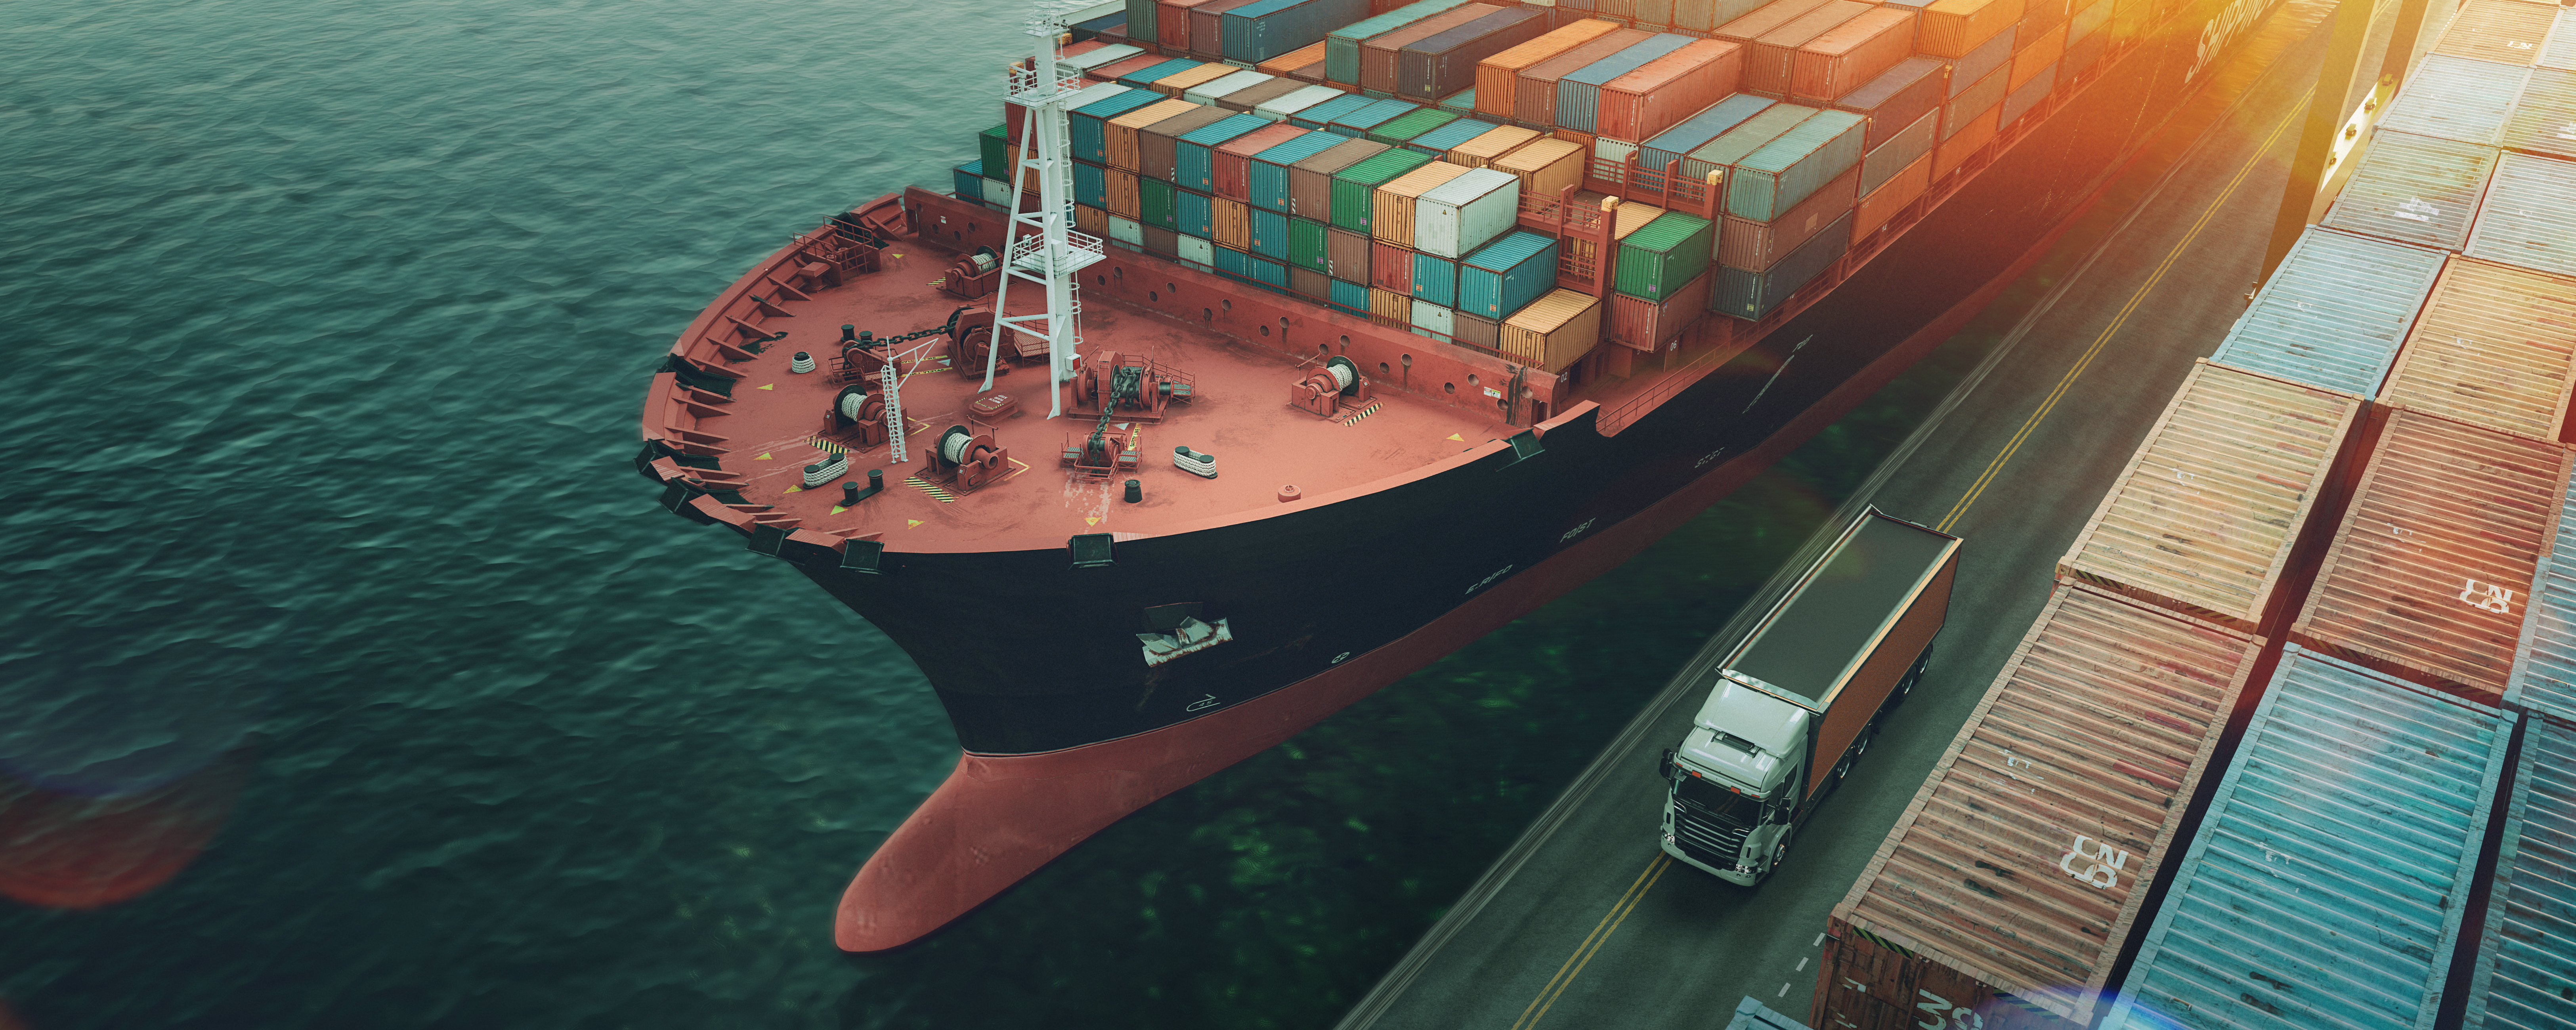 Transport a Logistik vu Container Cargo Schëff a Cargo Fliger.3D Rendering an Illustratioun.